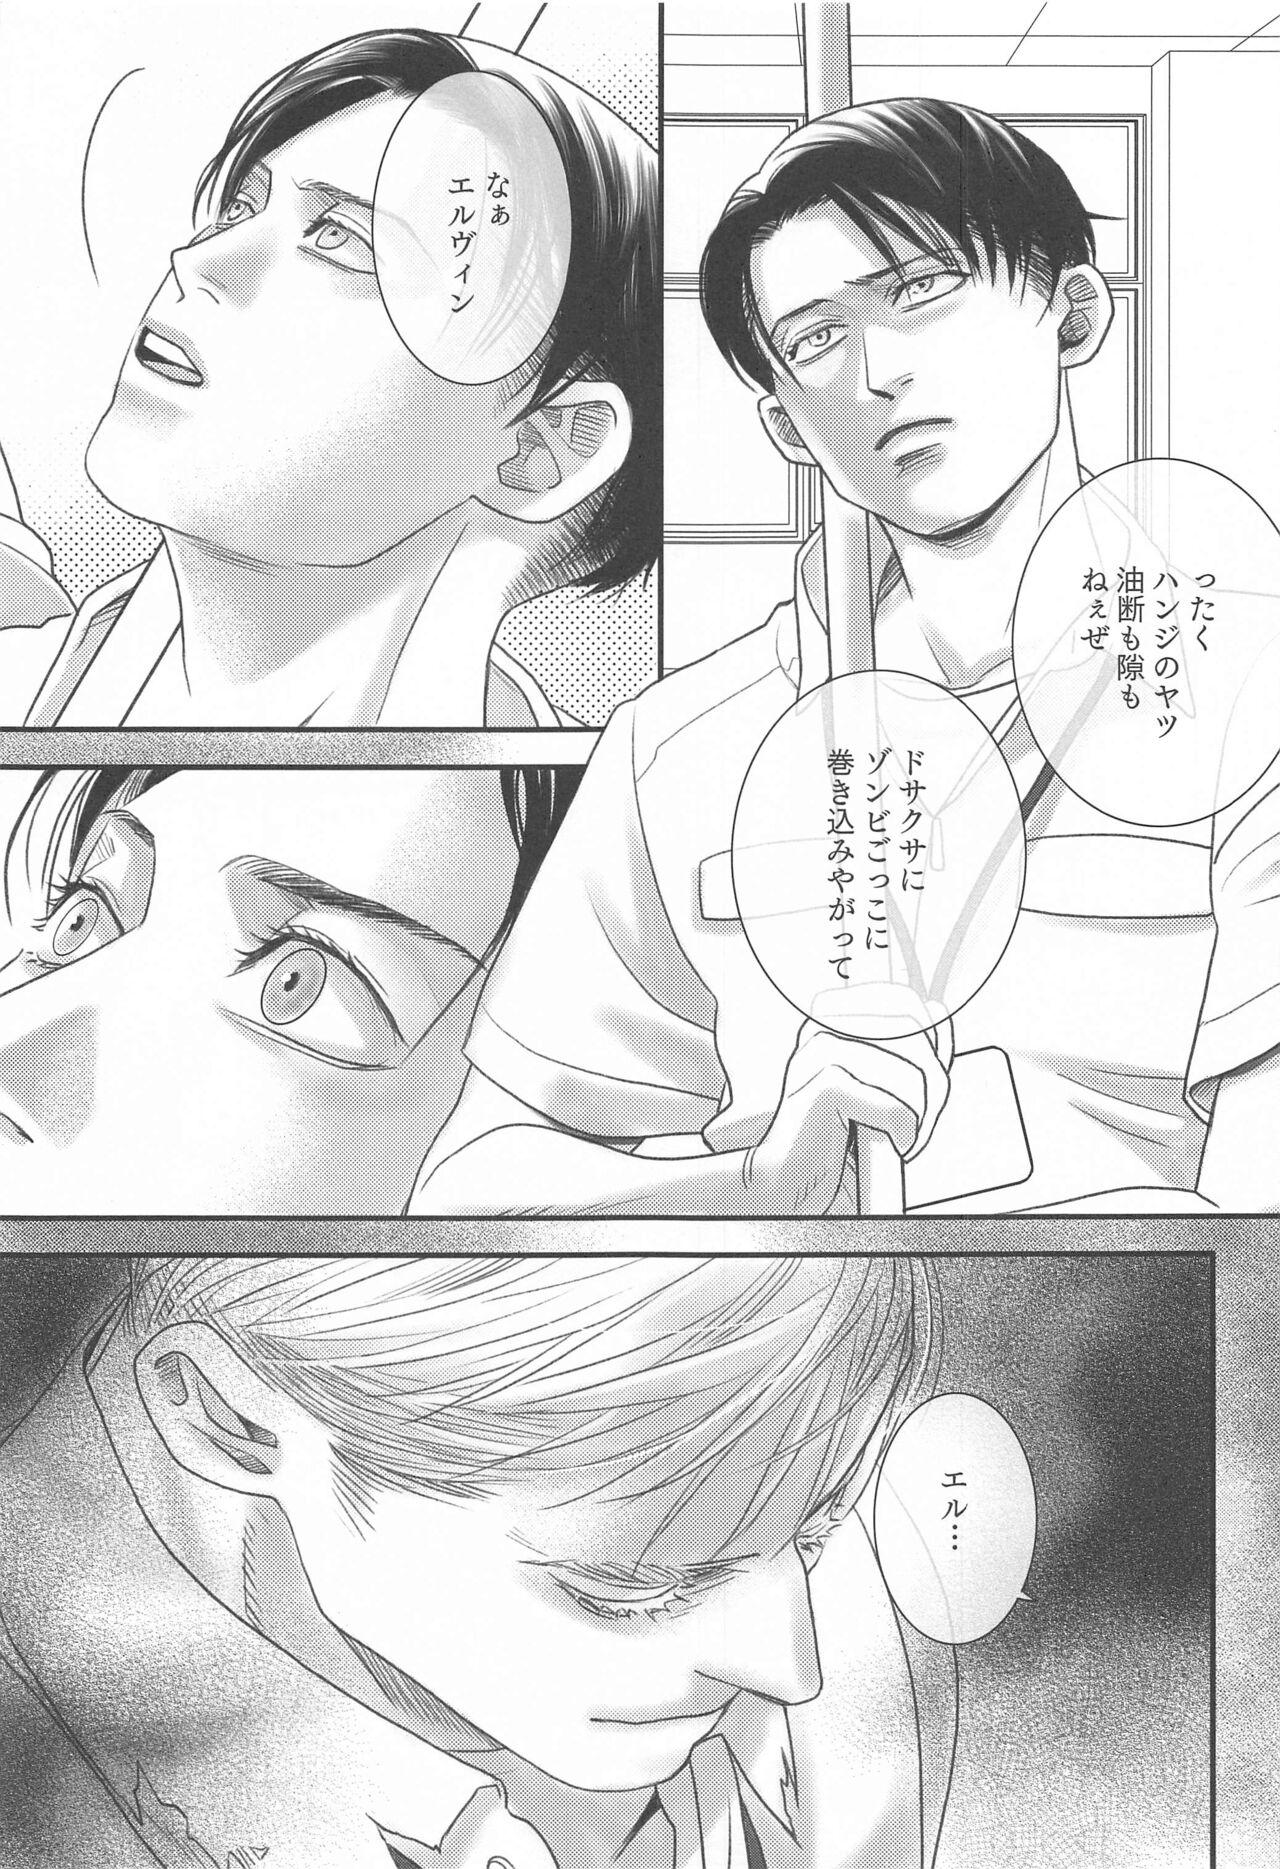 Lezbi Summer Assortment Remake - Shingeki no kyojin | attack on titan Mamando - Page 10